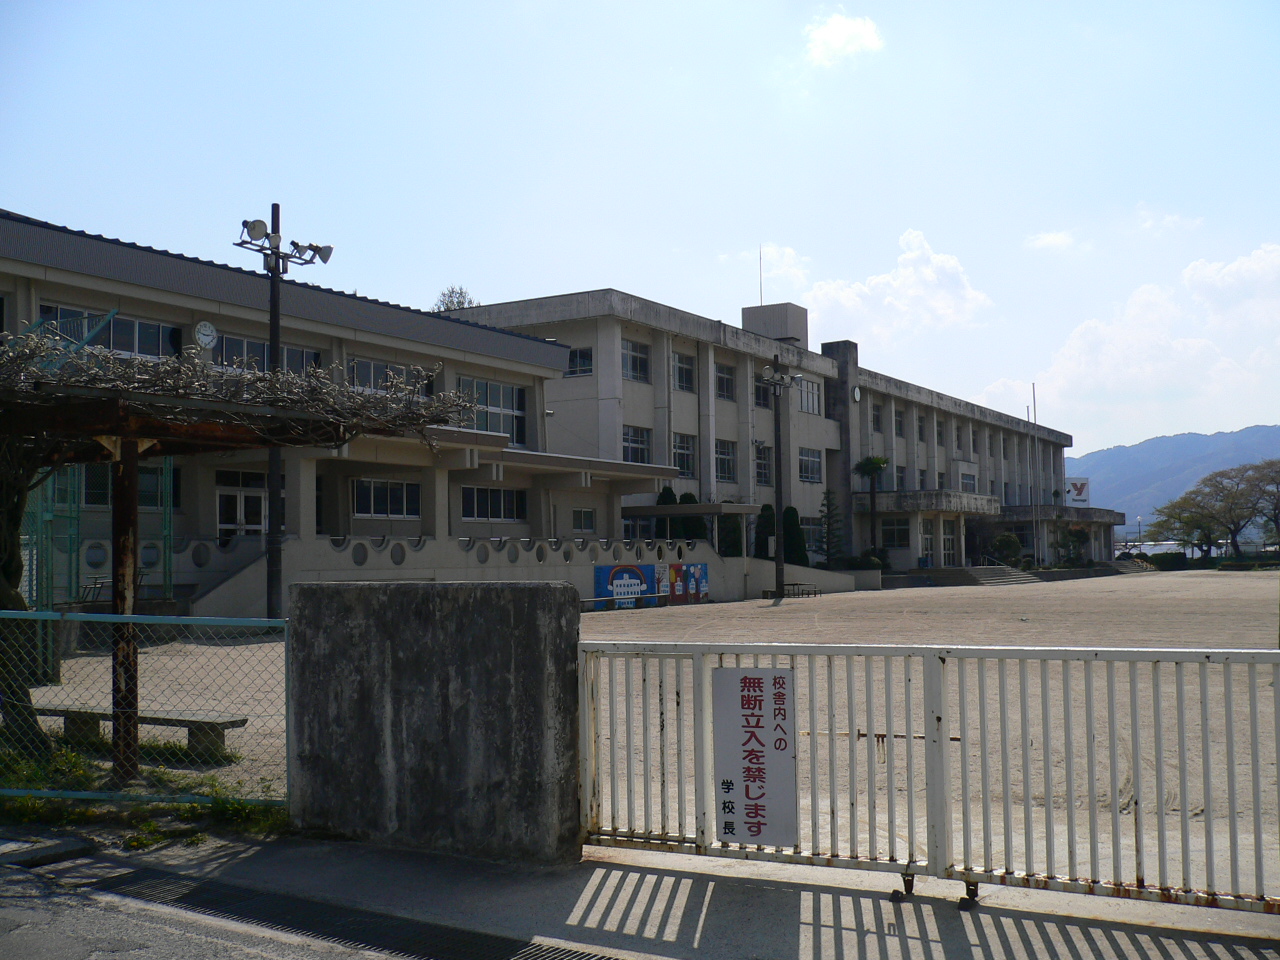 Primary school. 1766m to Nabari Tatsumino songs elementary school (elementary school)